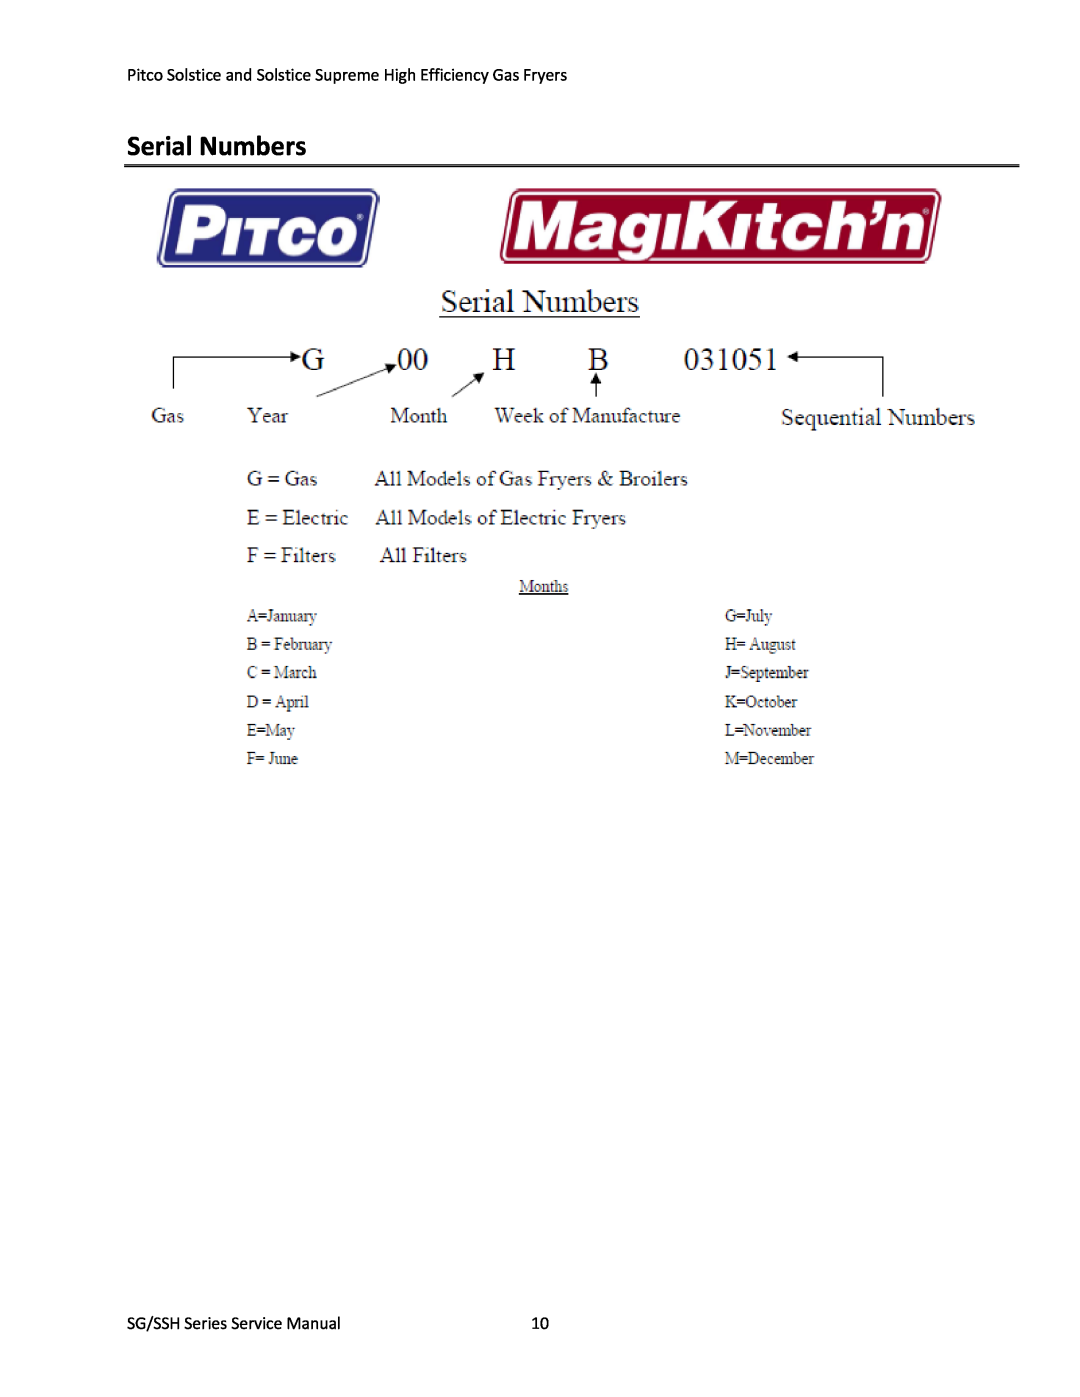 Pitco Frialator L22-345 manual Serial Numbers, SG/SSH Series Service Manual 